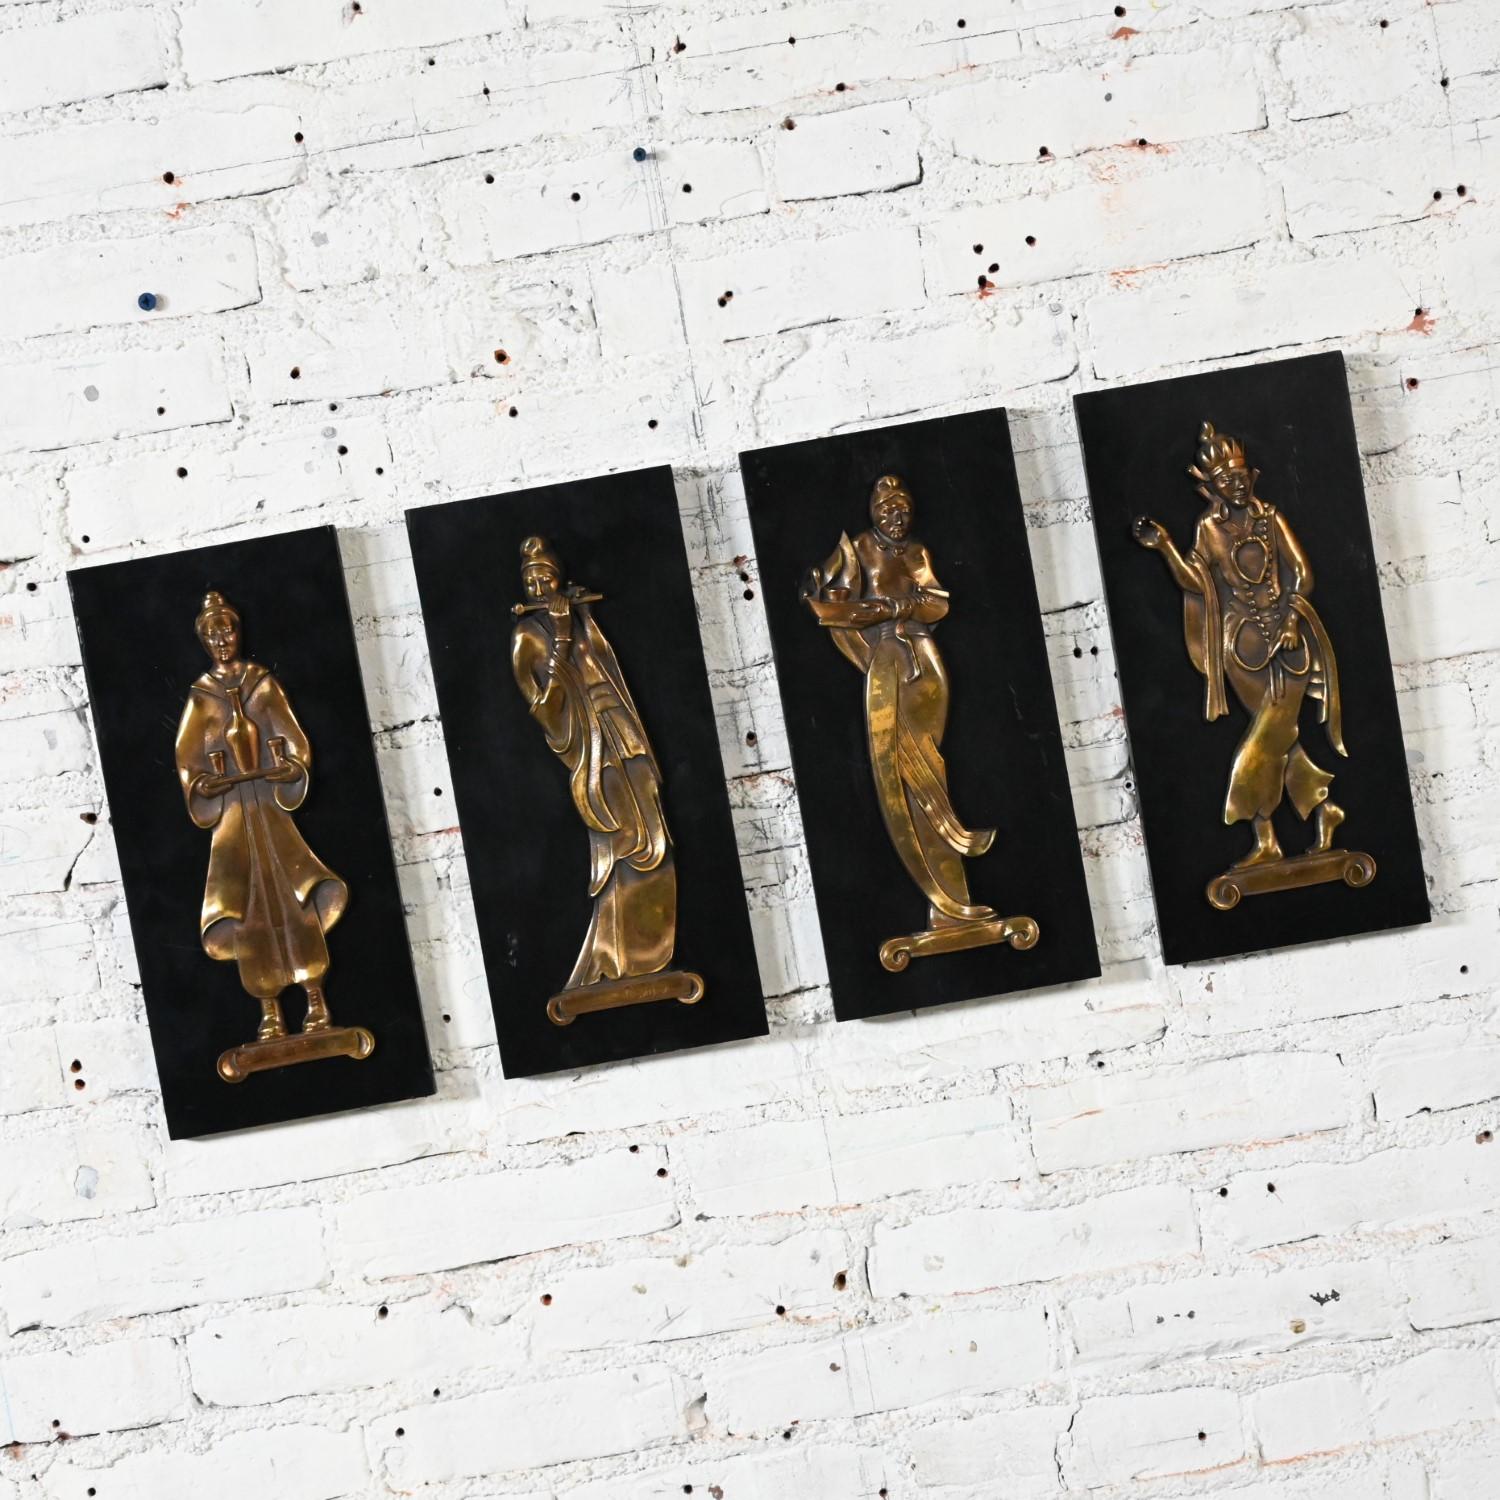 Wunderschöne asiatische Vintage-Plaketten mit gegossenen Bronzefiguren auf schwarz lackierten Sperrholzuntergründen, signiert Gansu, 4er-Set. Schöner Zustand, wobei zu beachten ist, dass diese Vintage und nicht neu sind und daher Gebrauchs- und